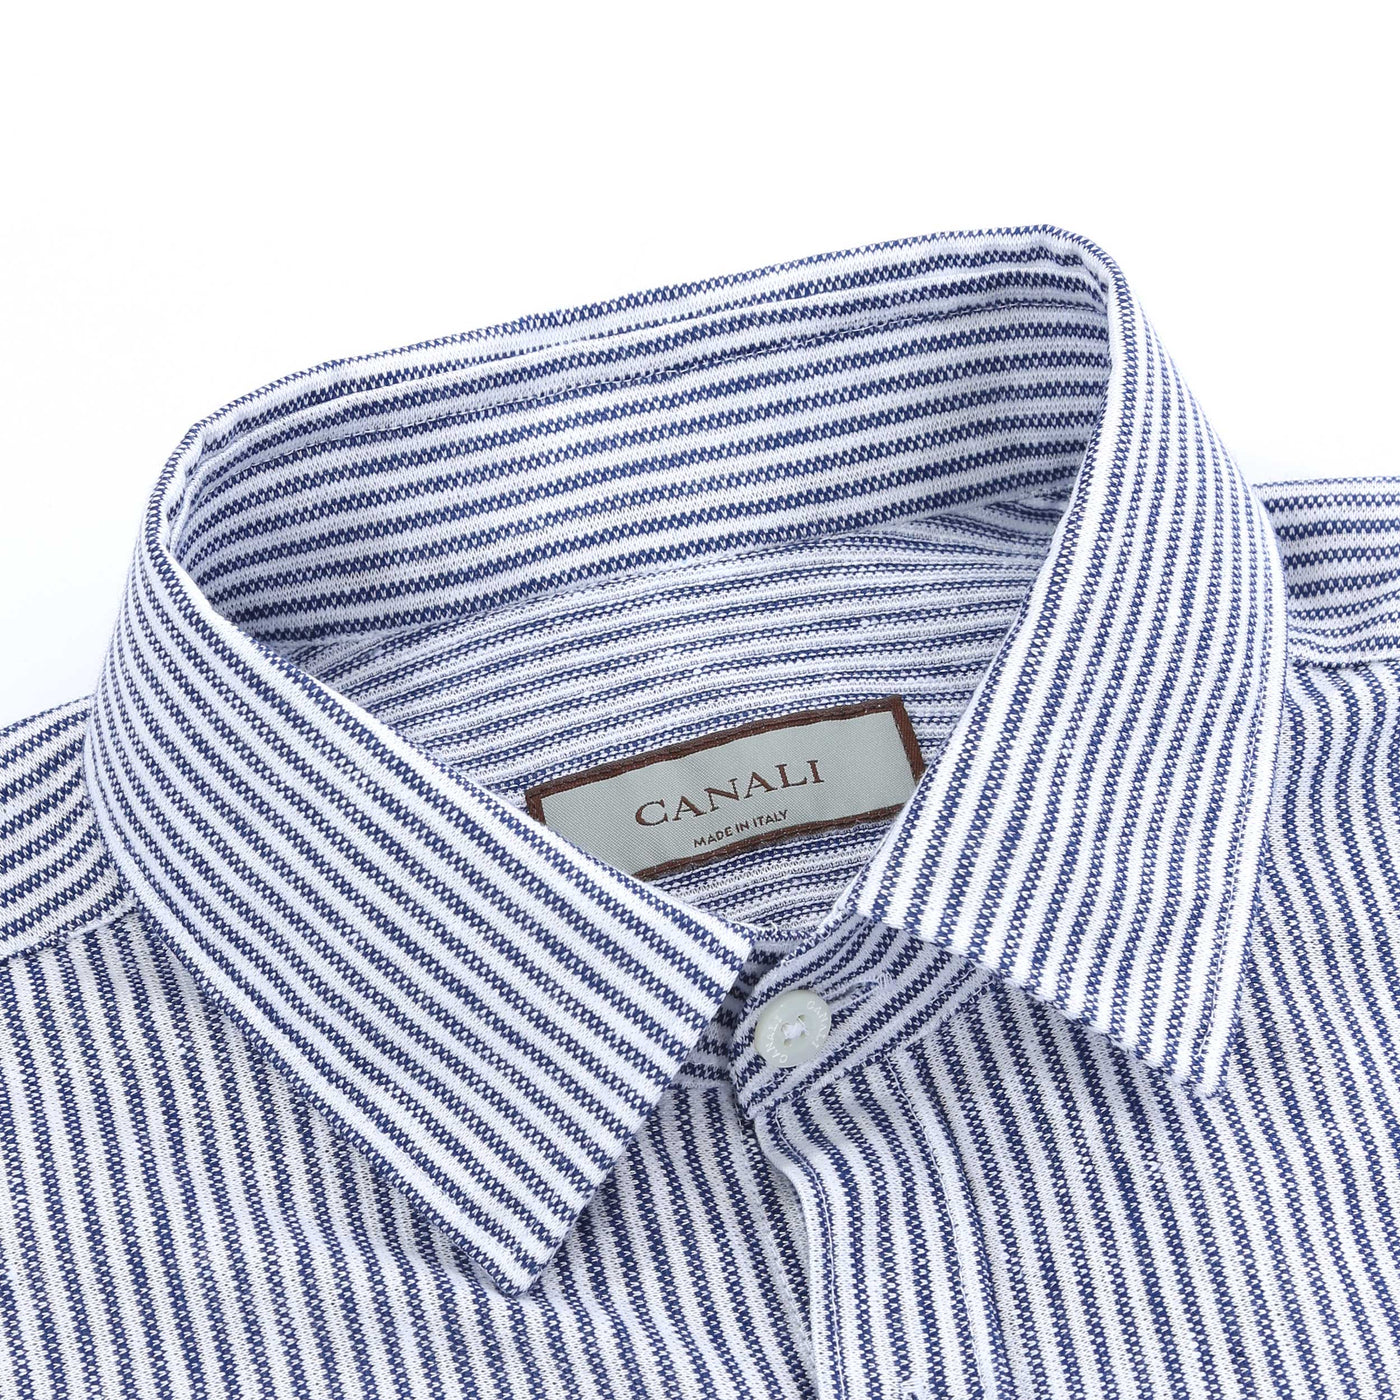 Canali Stripe Shirt in Blue Stripe Collar